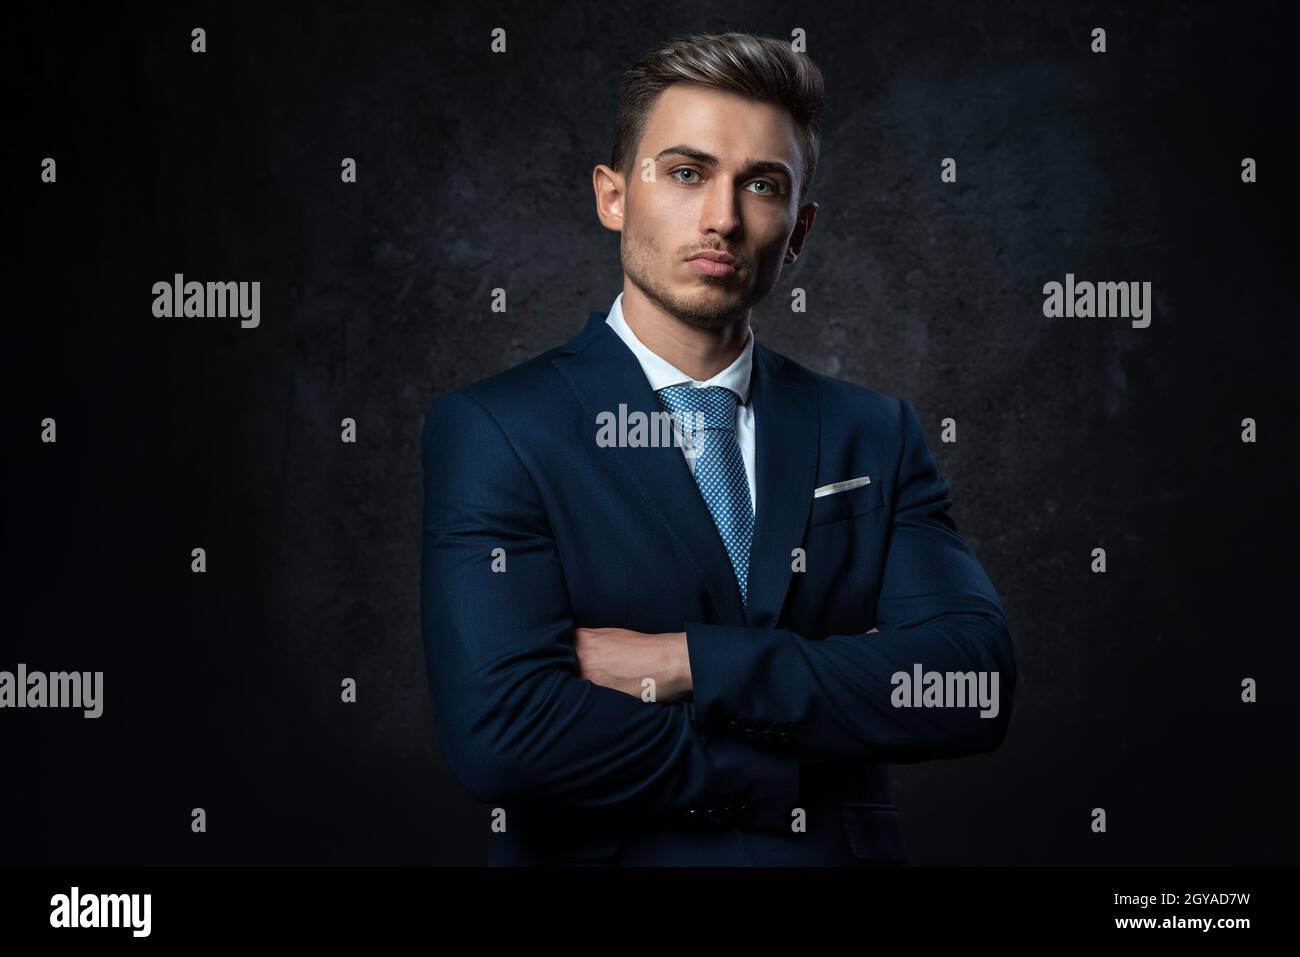 Ritratto concettuale di un giovane uomo d'affari di stile, in abito blu, mani su una croce, su uno sfondo scuro testurizzato. Foto Stock